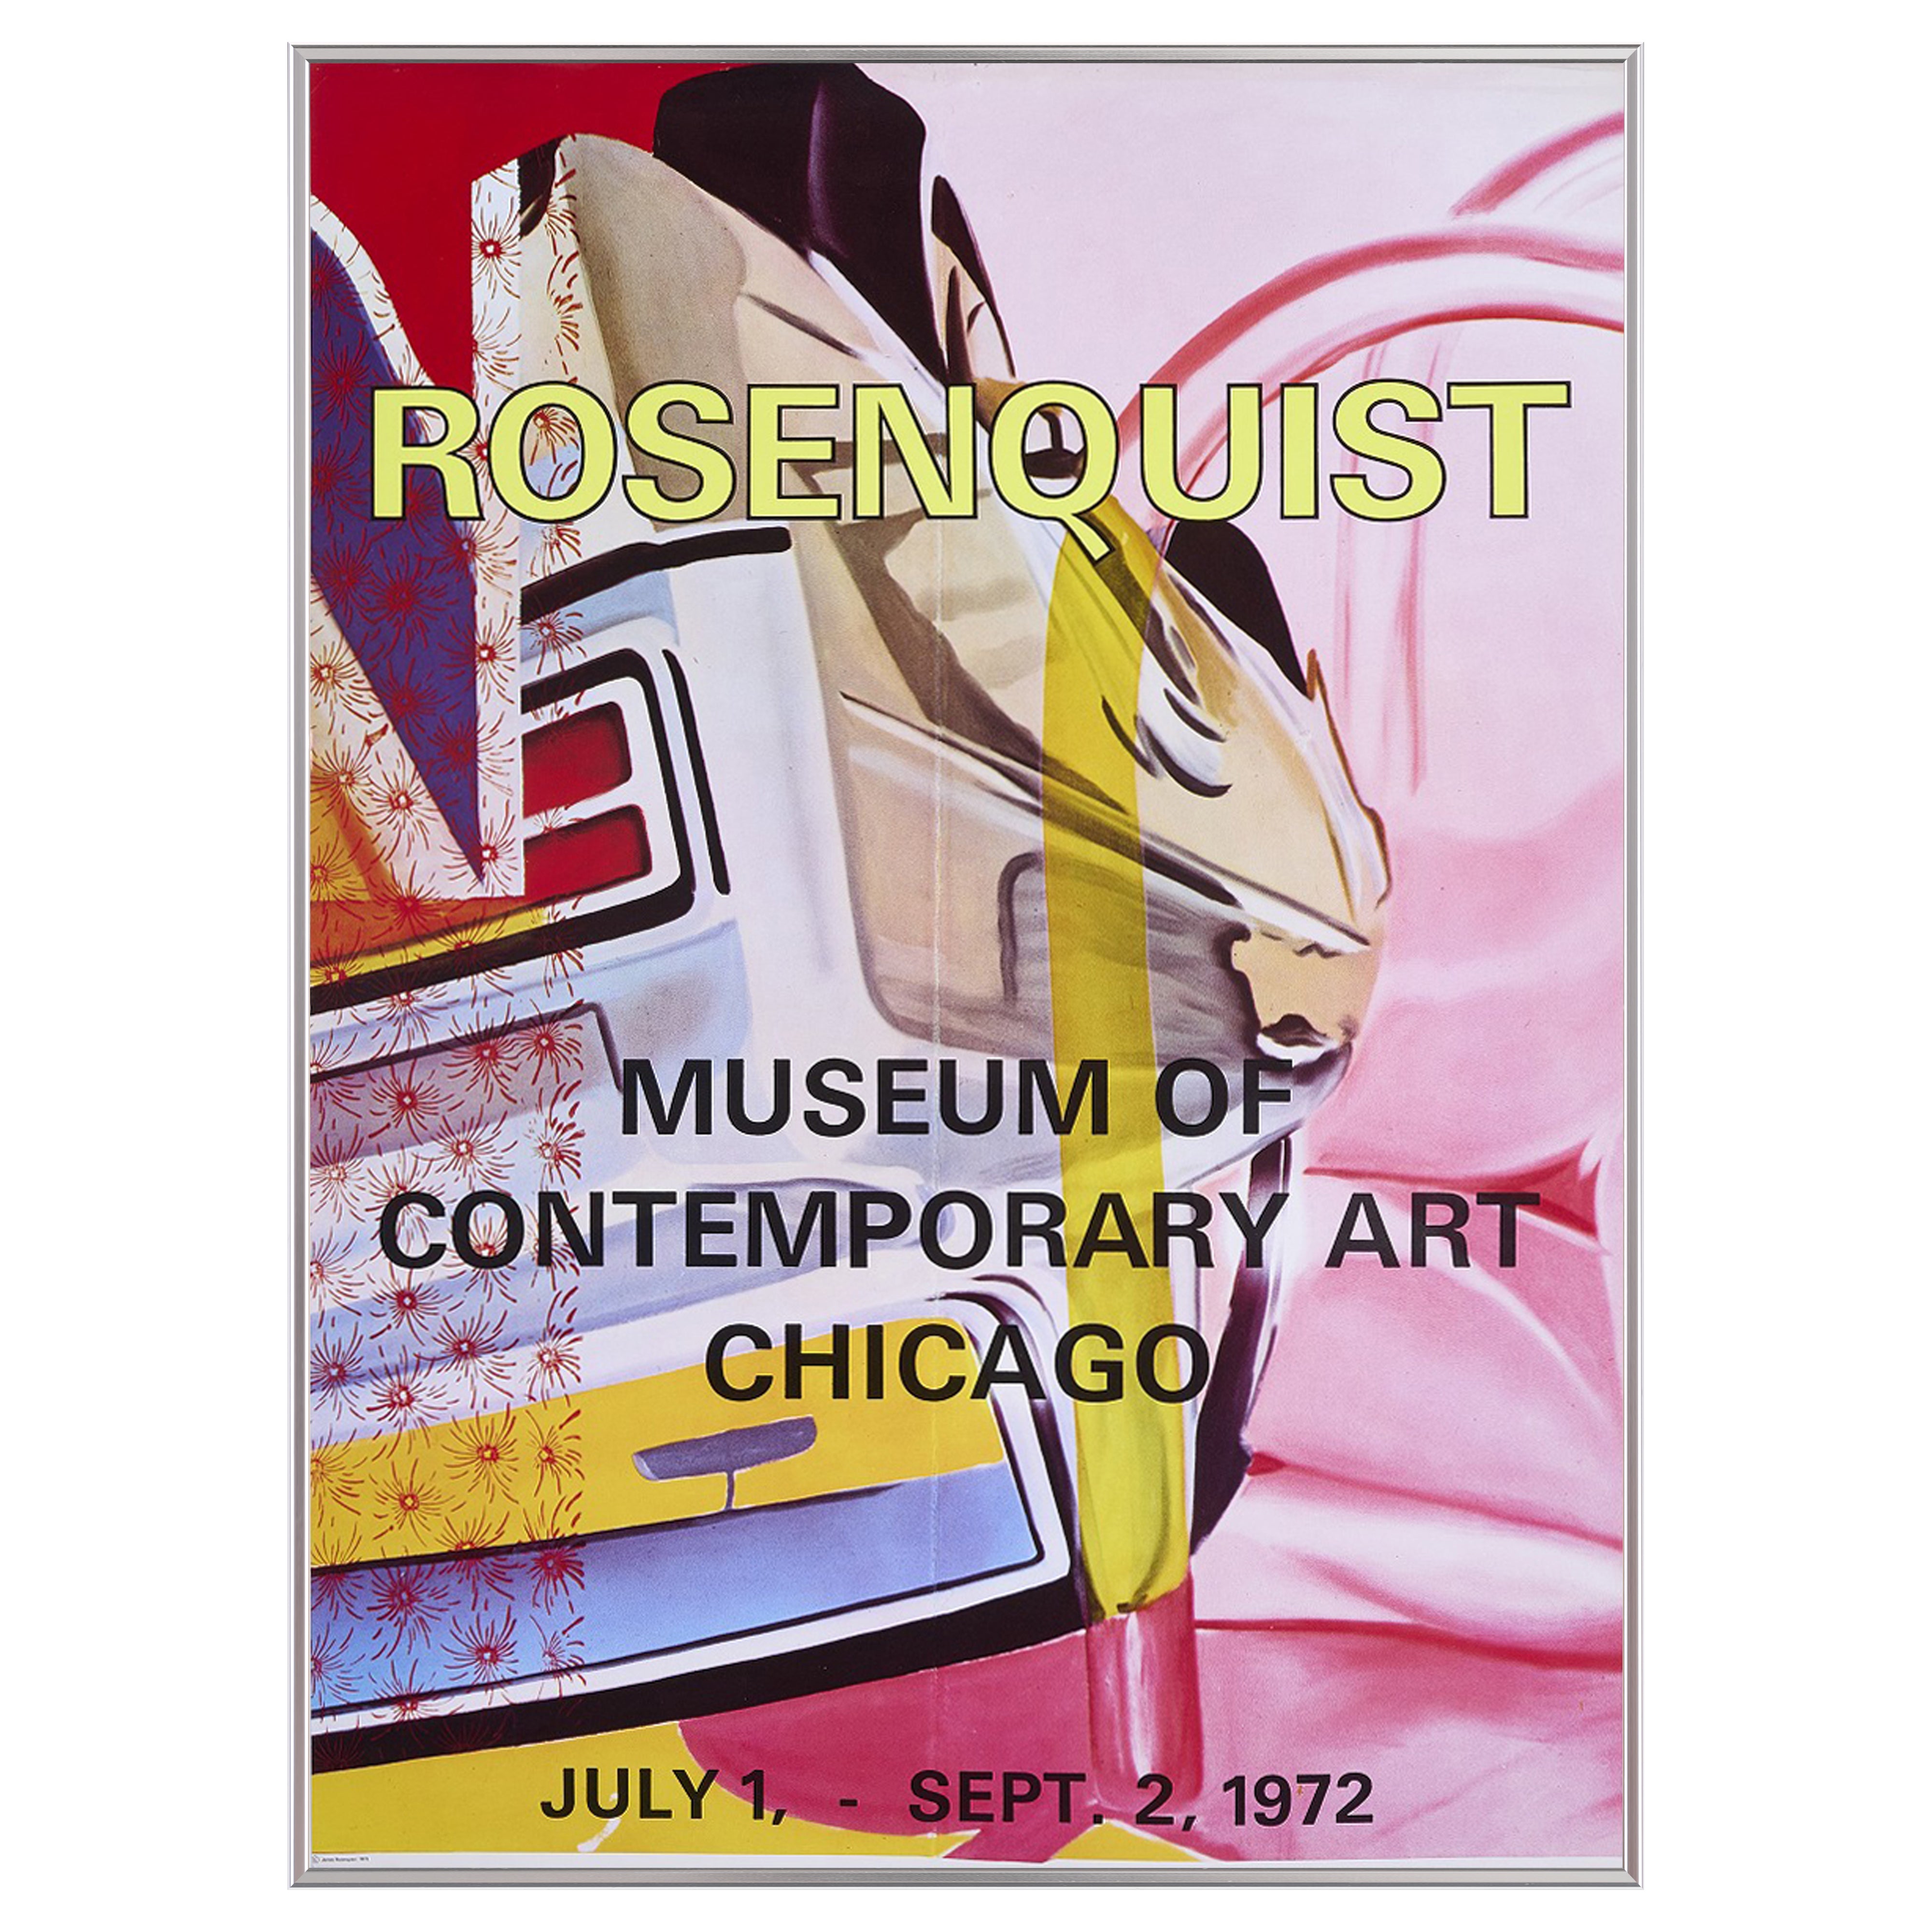 【限定10枚】MUSEUM OF CONTEMPORARY ART CHICAGO 1972 / ジェームス・ローゼンクイスト